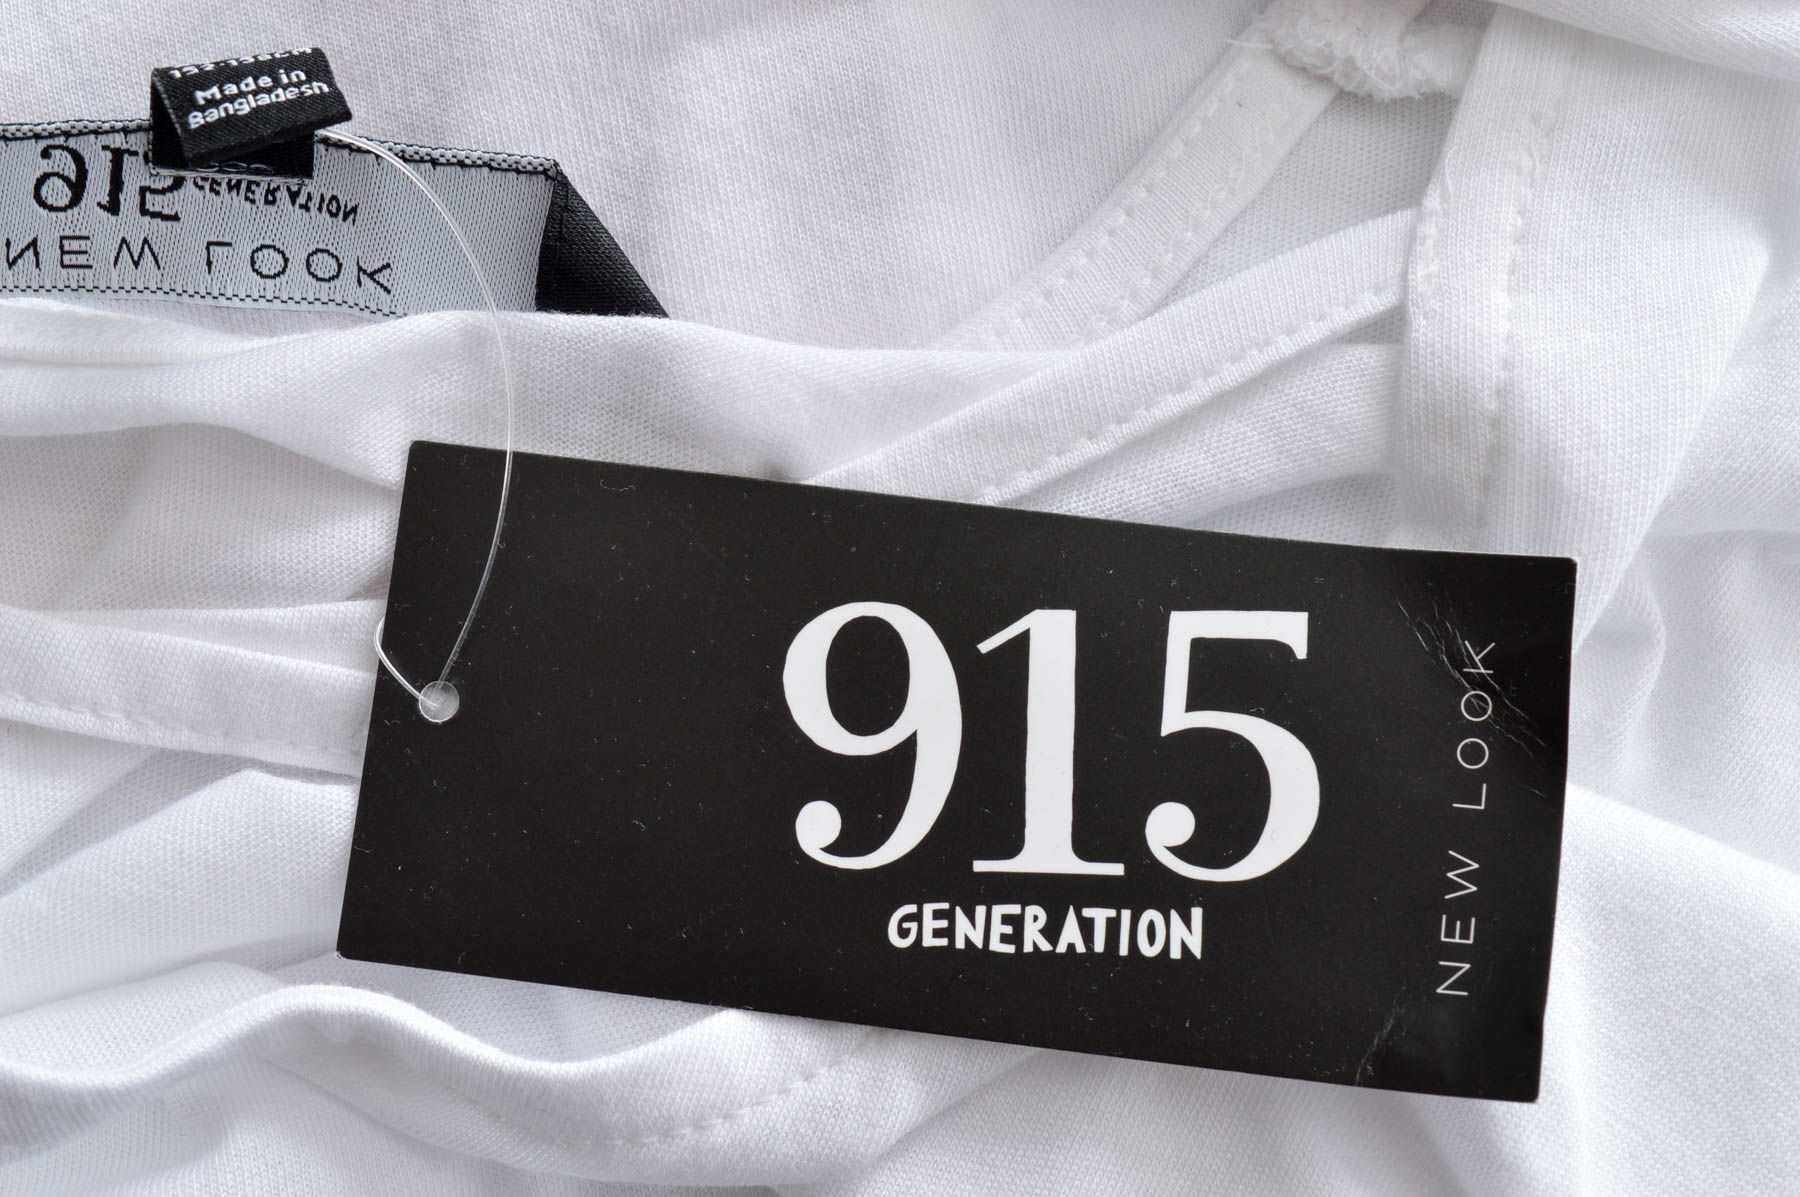 Tricou pentu fată - New Look 915 Generation - 2